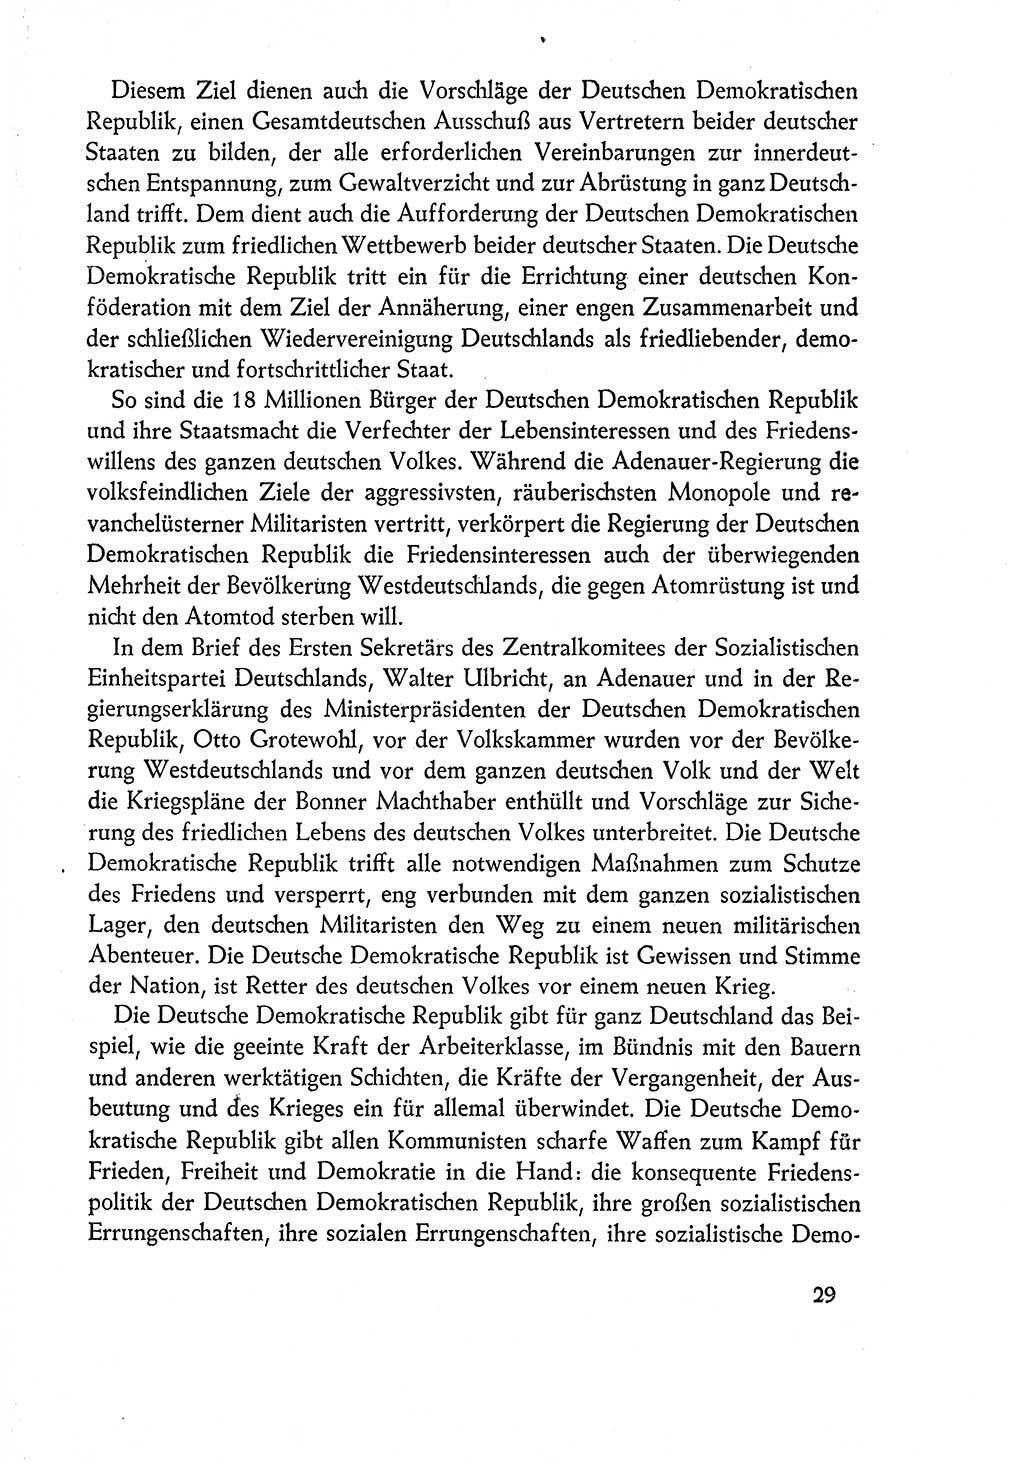 Dokumente der Sozialistischen Einheitspartei Deutschlands (SED) [Deutsche Demokratische Republik (DDR)] 1960-1961, Seite 29 (Dok. SED DDR 1960-1961, S. 29)